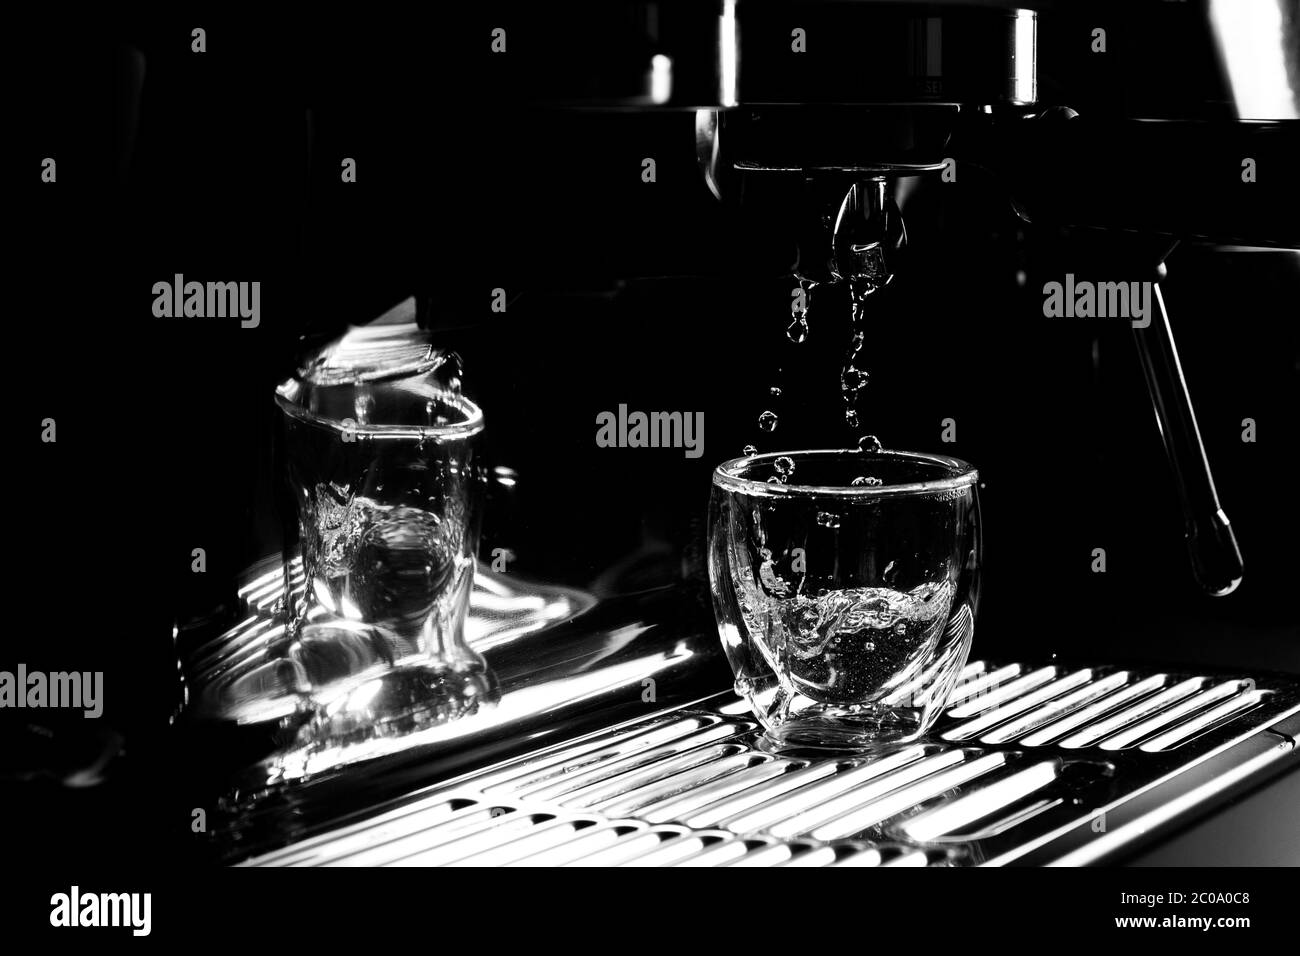 Gros plan de gouttes d'eau chaude qui s'écoulant dans une tasse à espresso transparente provenant d'une machine à café manuelle pour le préchauffage, monochrome, avec espace de copie Banque D'Images